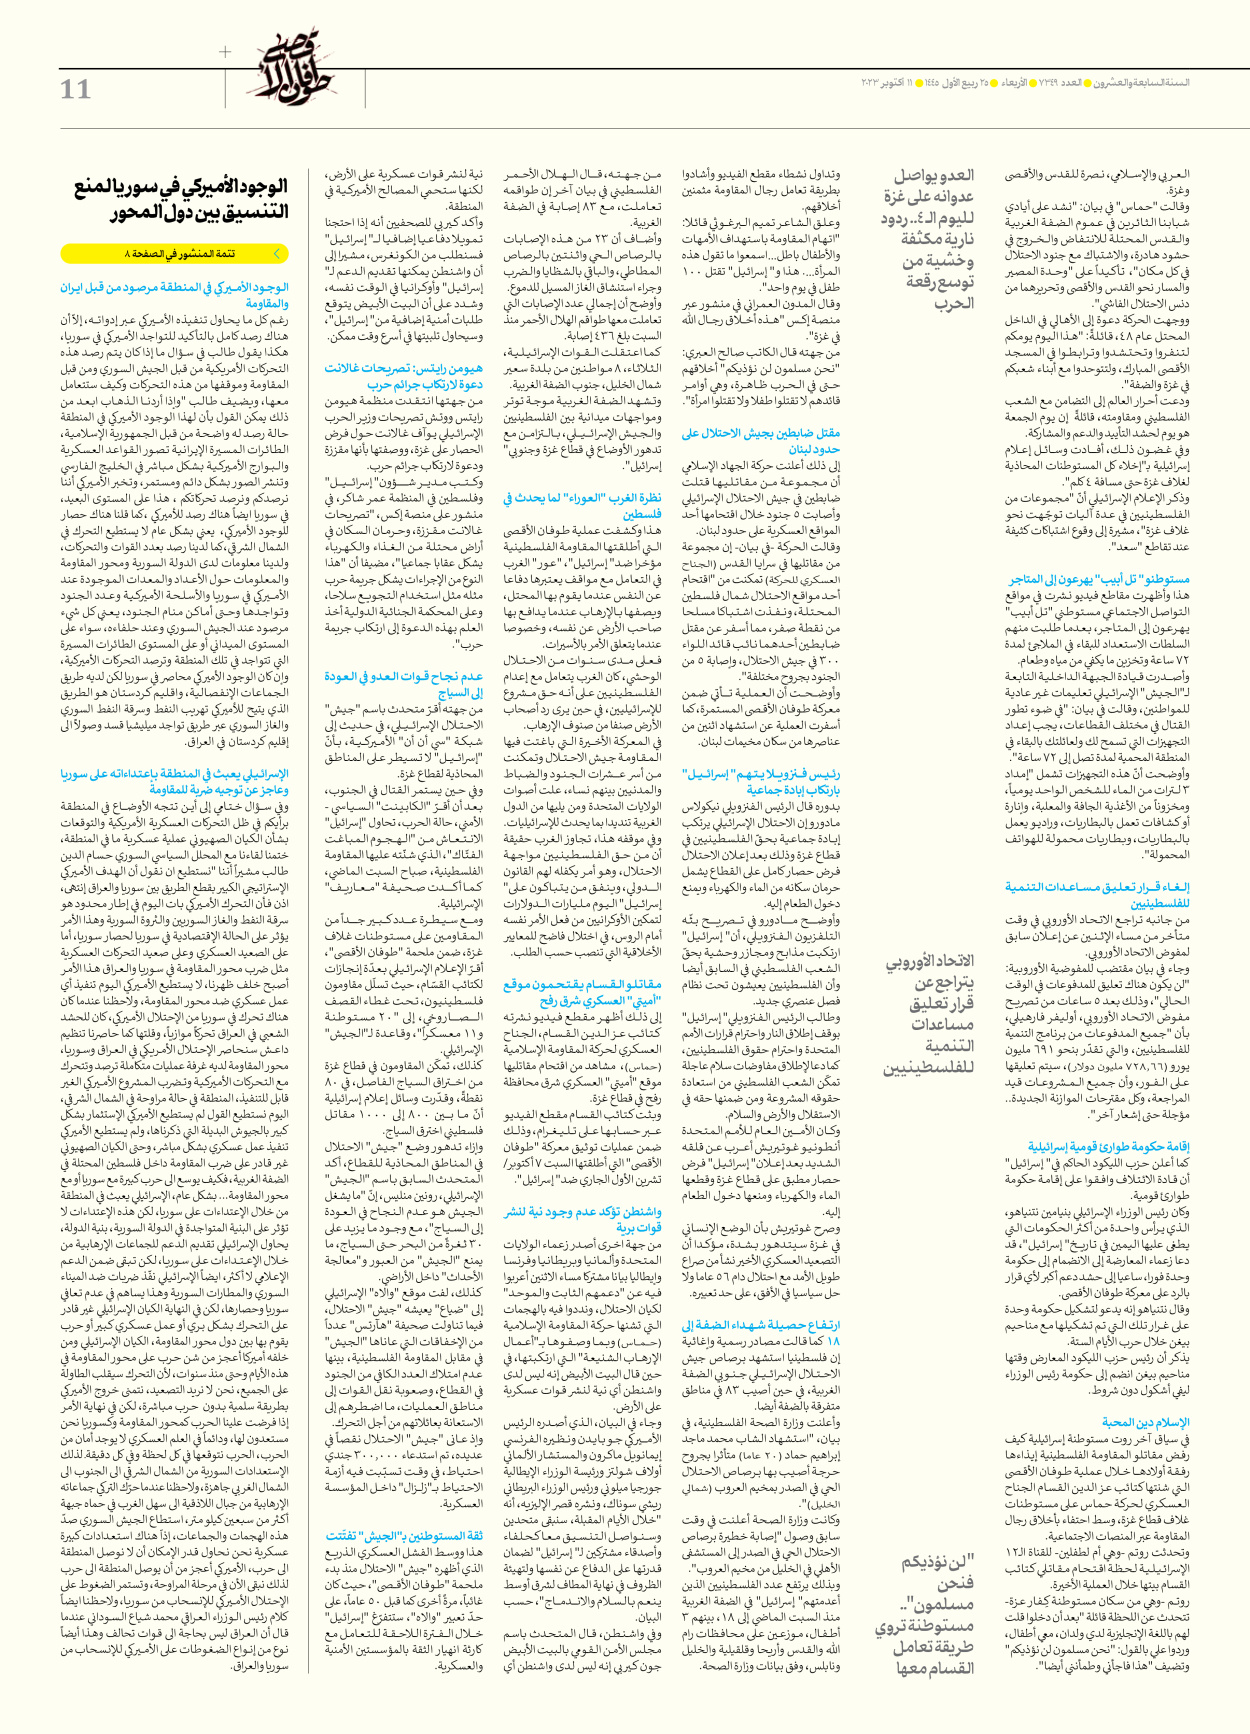 صحیفة ایران الدولیة الوفاق - العدد سبعة آلاف وثلاثمائة وتسعة وأربعون - ١١ أكتوبر ٢٠٢٣ - الصفحة ۱۱